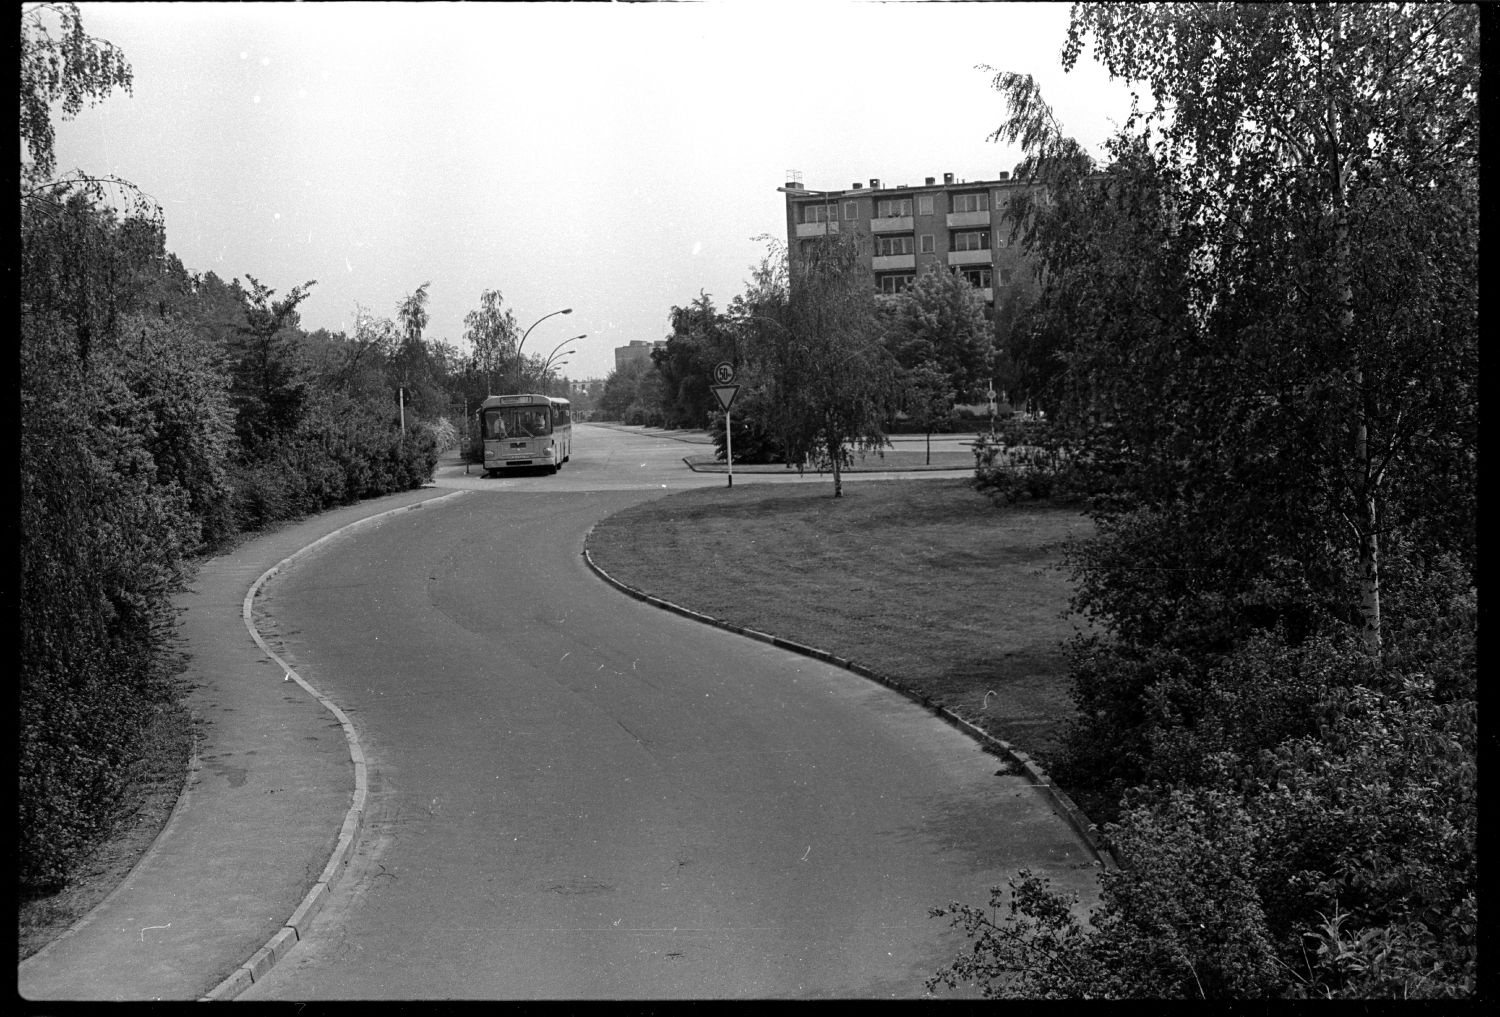 s/w-Fotografie: Berliner Mauer, Bushaltestelle an der Berlepschstraße in Berlin-Zehlendorf (AlliiertenMuseum/U.S. Army Photograph Public Domain Mark)